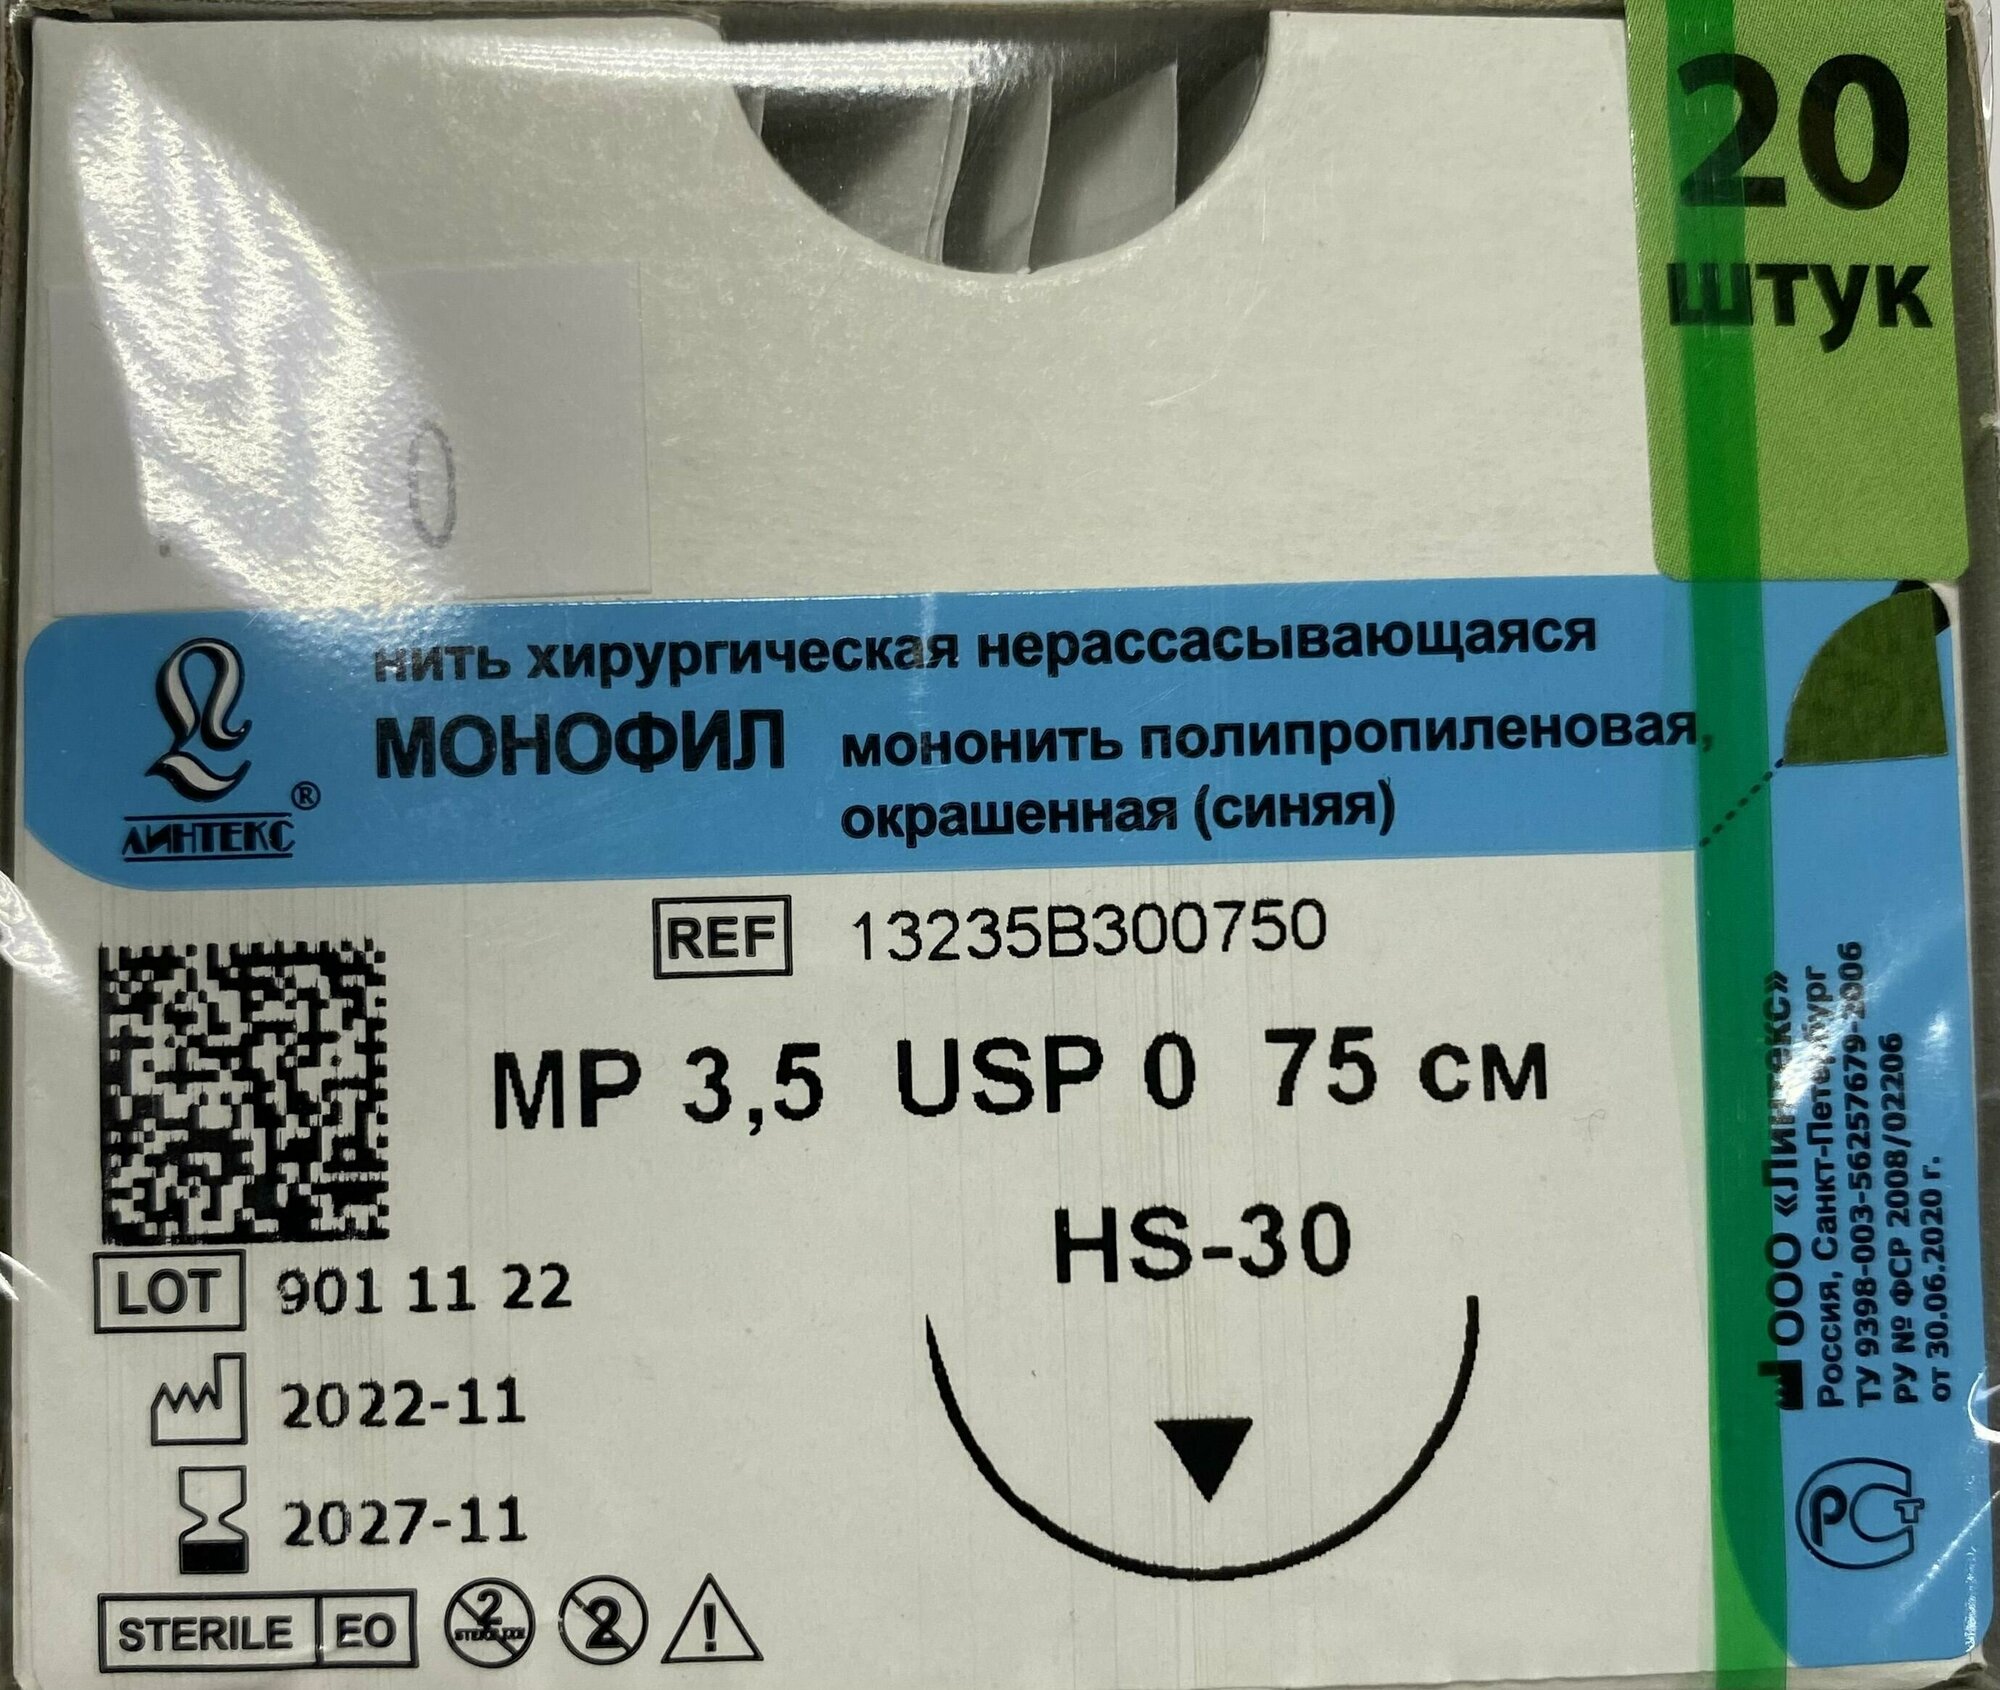 Шовный материал хирургический монофил полипропилен USP 0 (МР 3,5), 75см, с иглой режущая HS-30, Синяя (20шт/уп) Линтекс